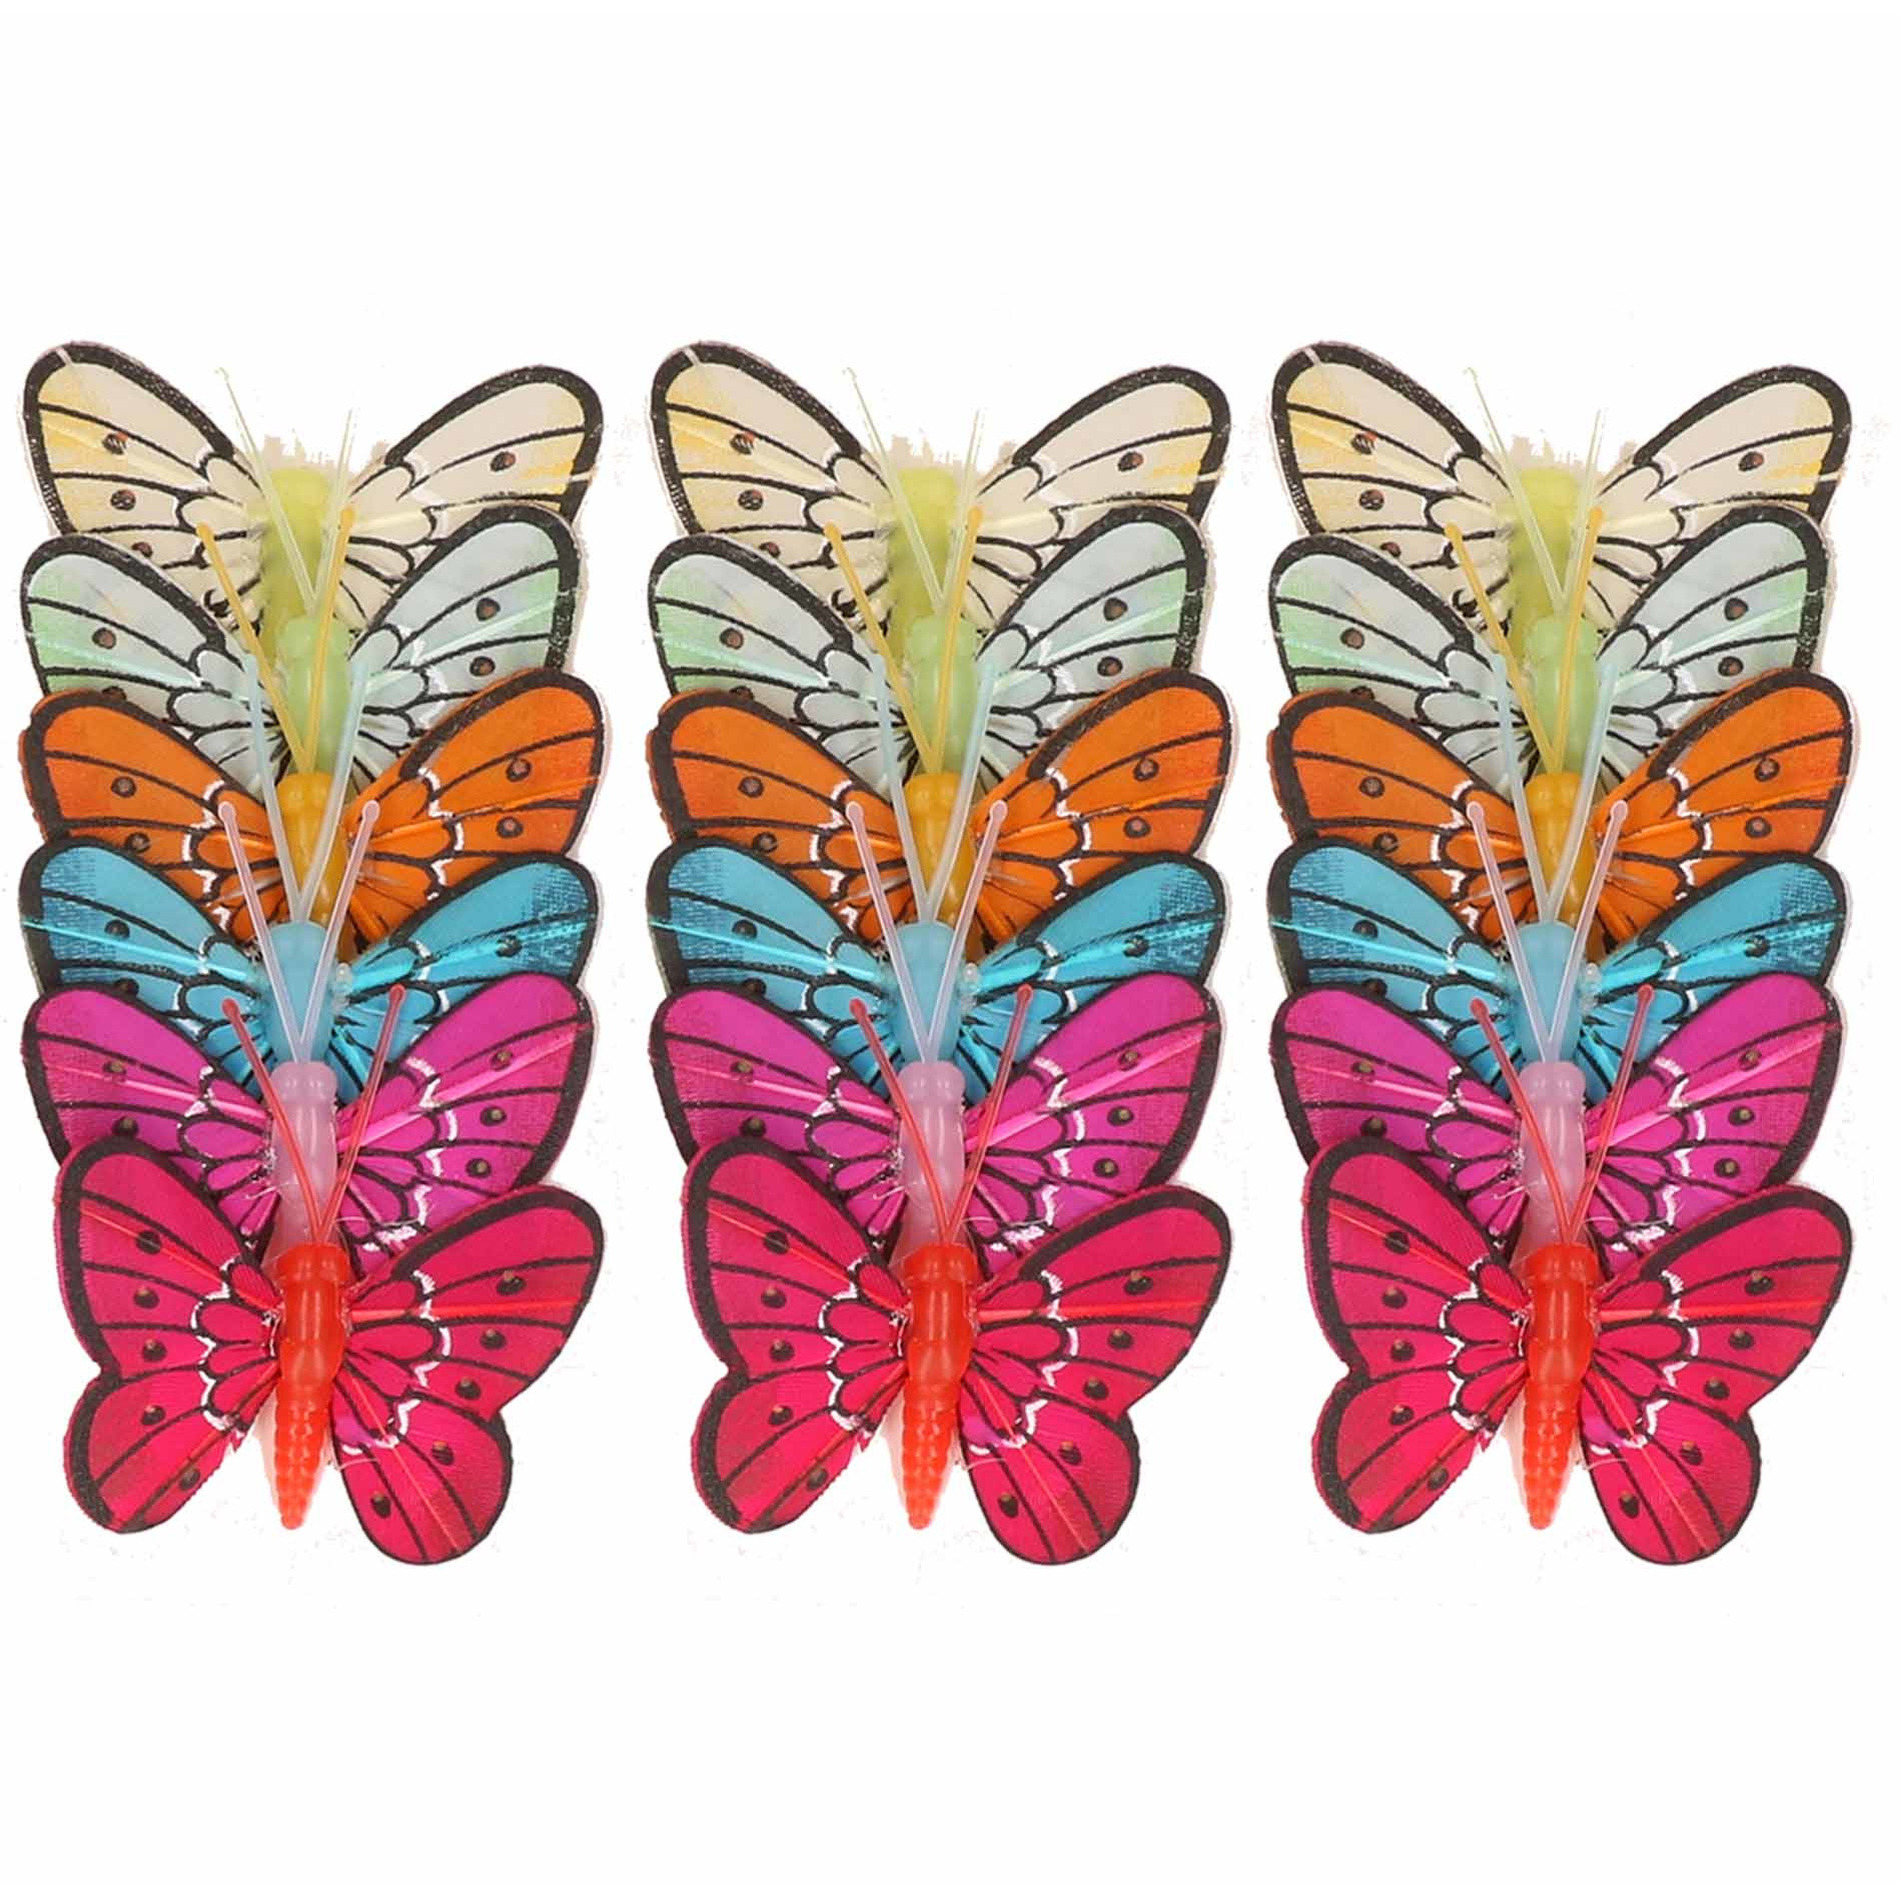 18x stuks Decoratie vlinders 5 cm op prikkers